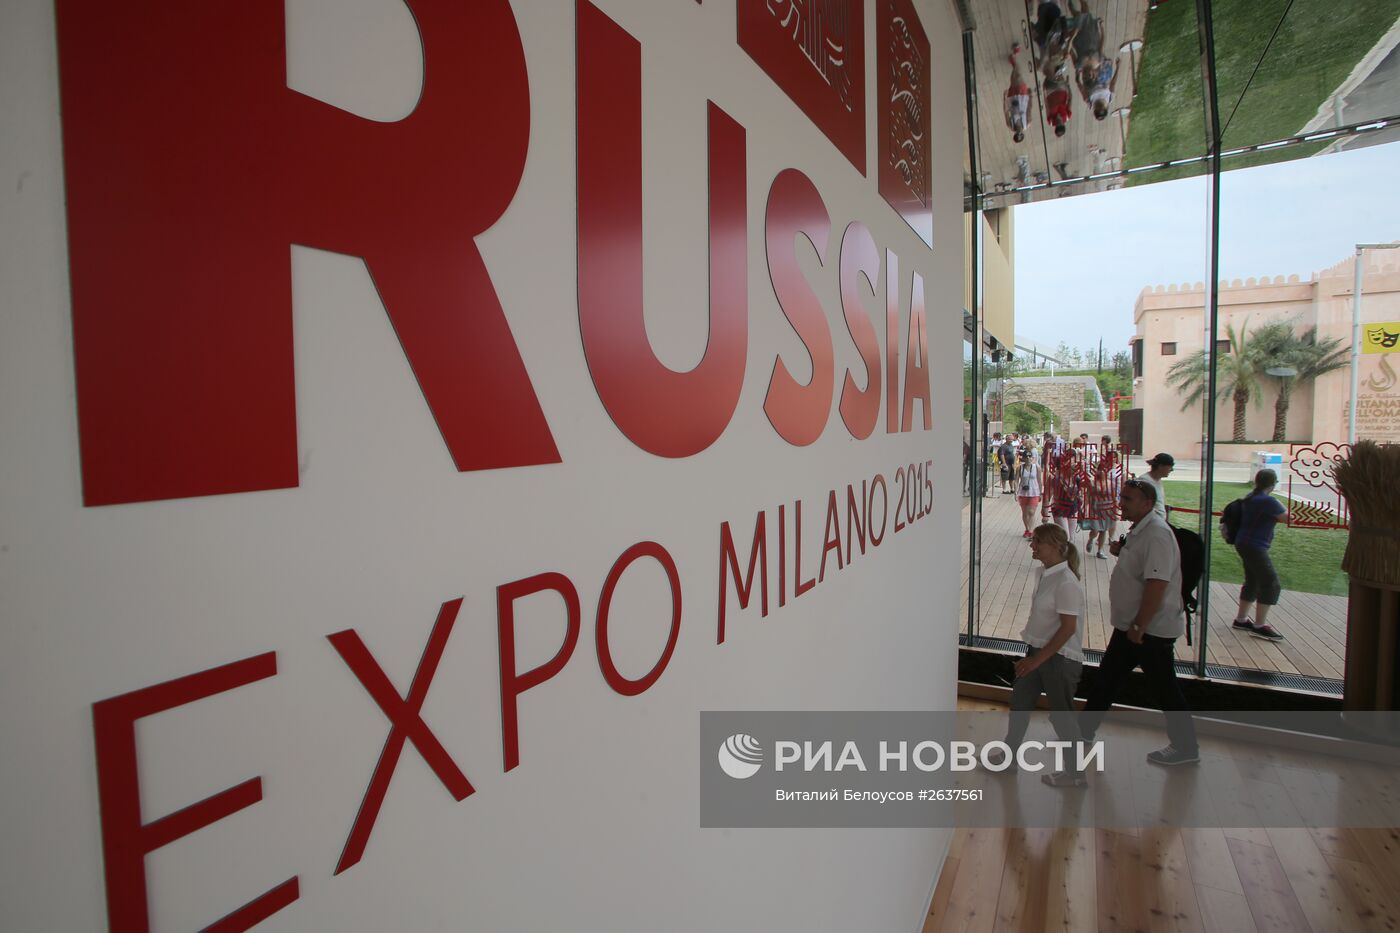 Всемирная выставка EXPO-2015 в Милане